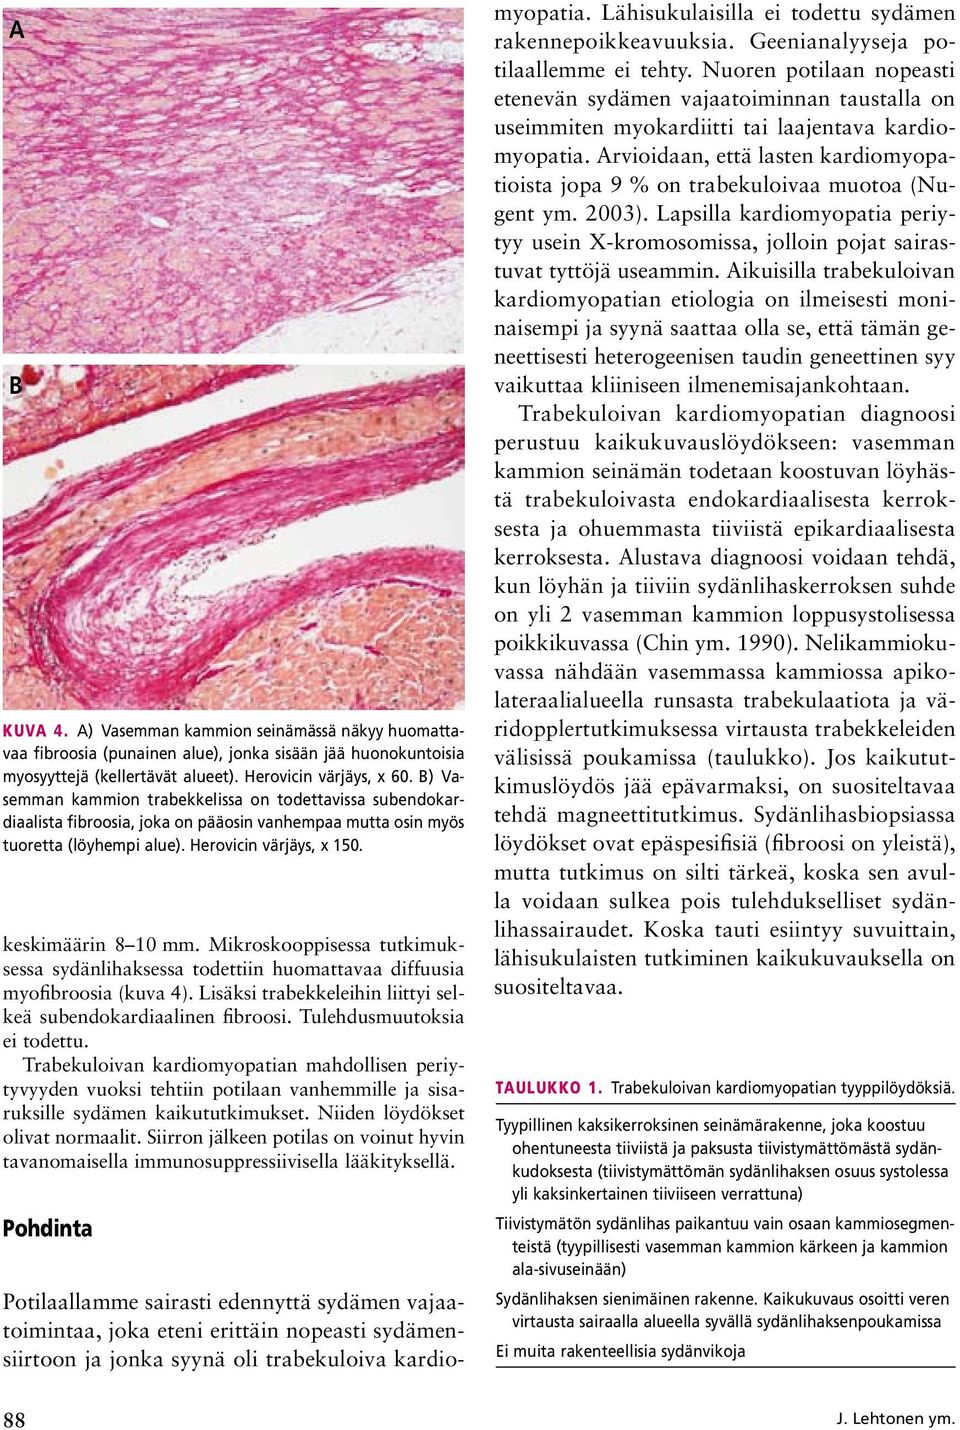 Mikroskooppisessa tutkimuksessa sydänlihaksessa todettiin huomattavaa diffuusia myofibroosia (kuva 4). Lisäksi trabekkeleihin liittyi selkeä subendokardiaalinen fibroosi. Tulehdusmuutoksia ei todettu.